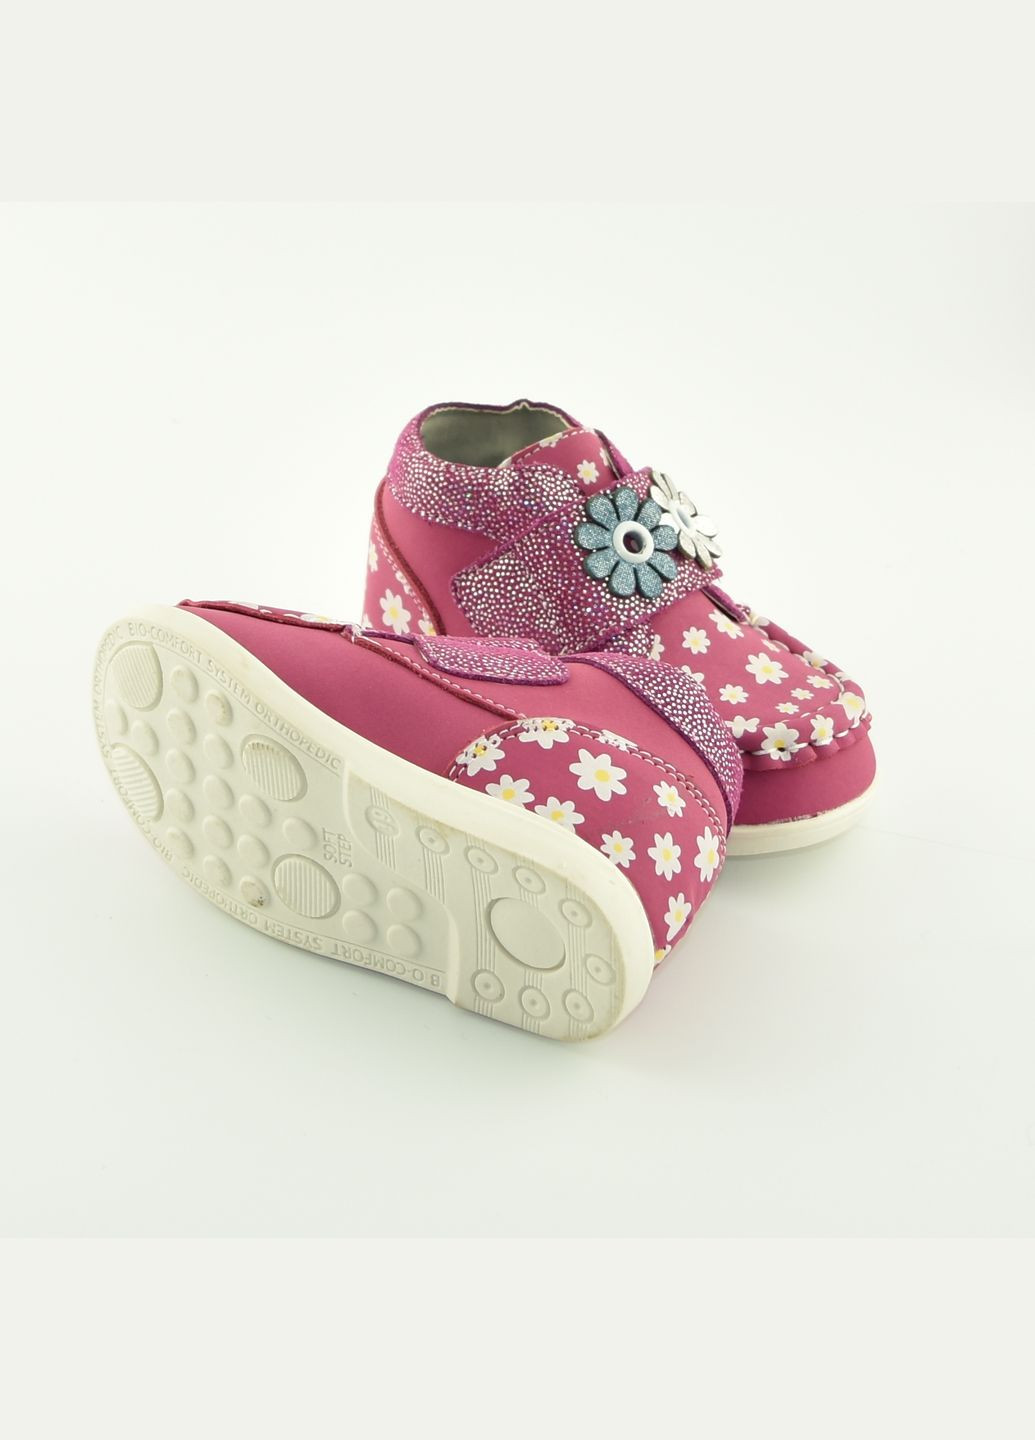 Цветные осенние детские ботинки 100-5 Шалунишка